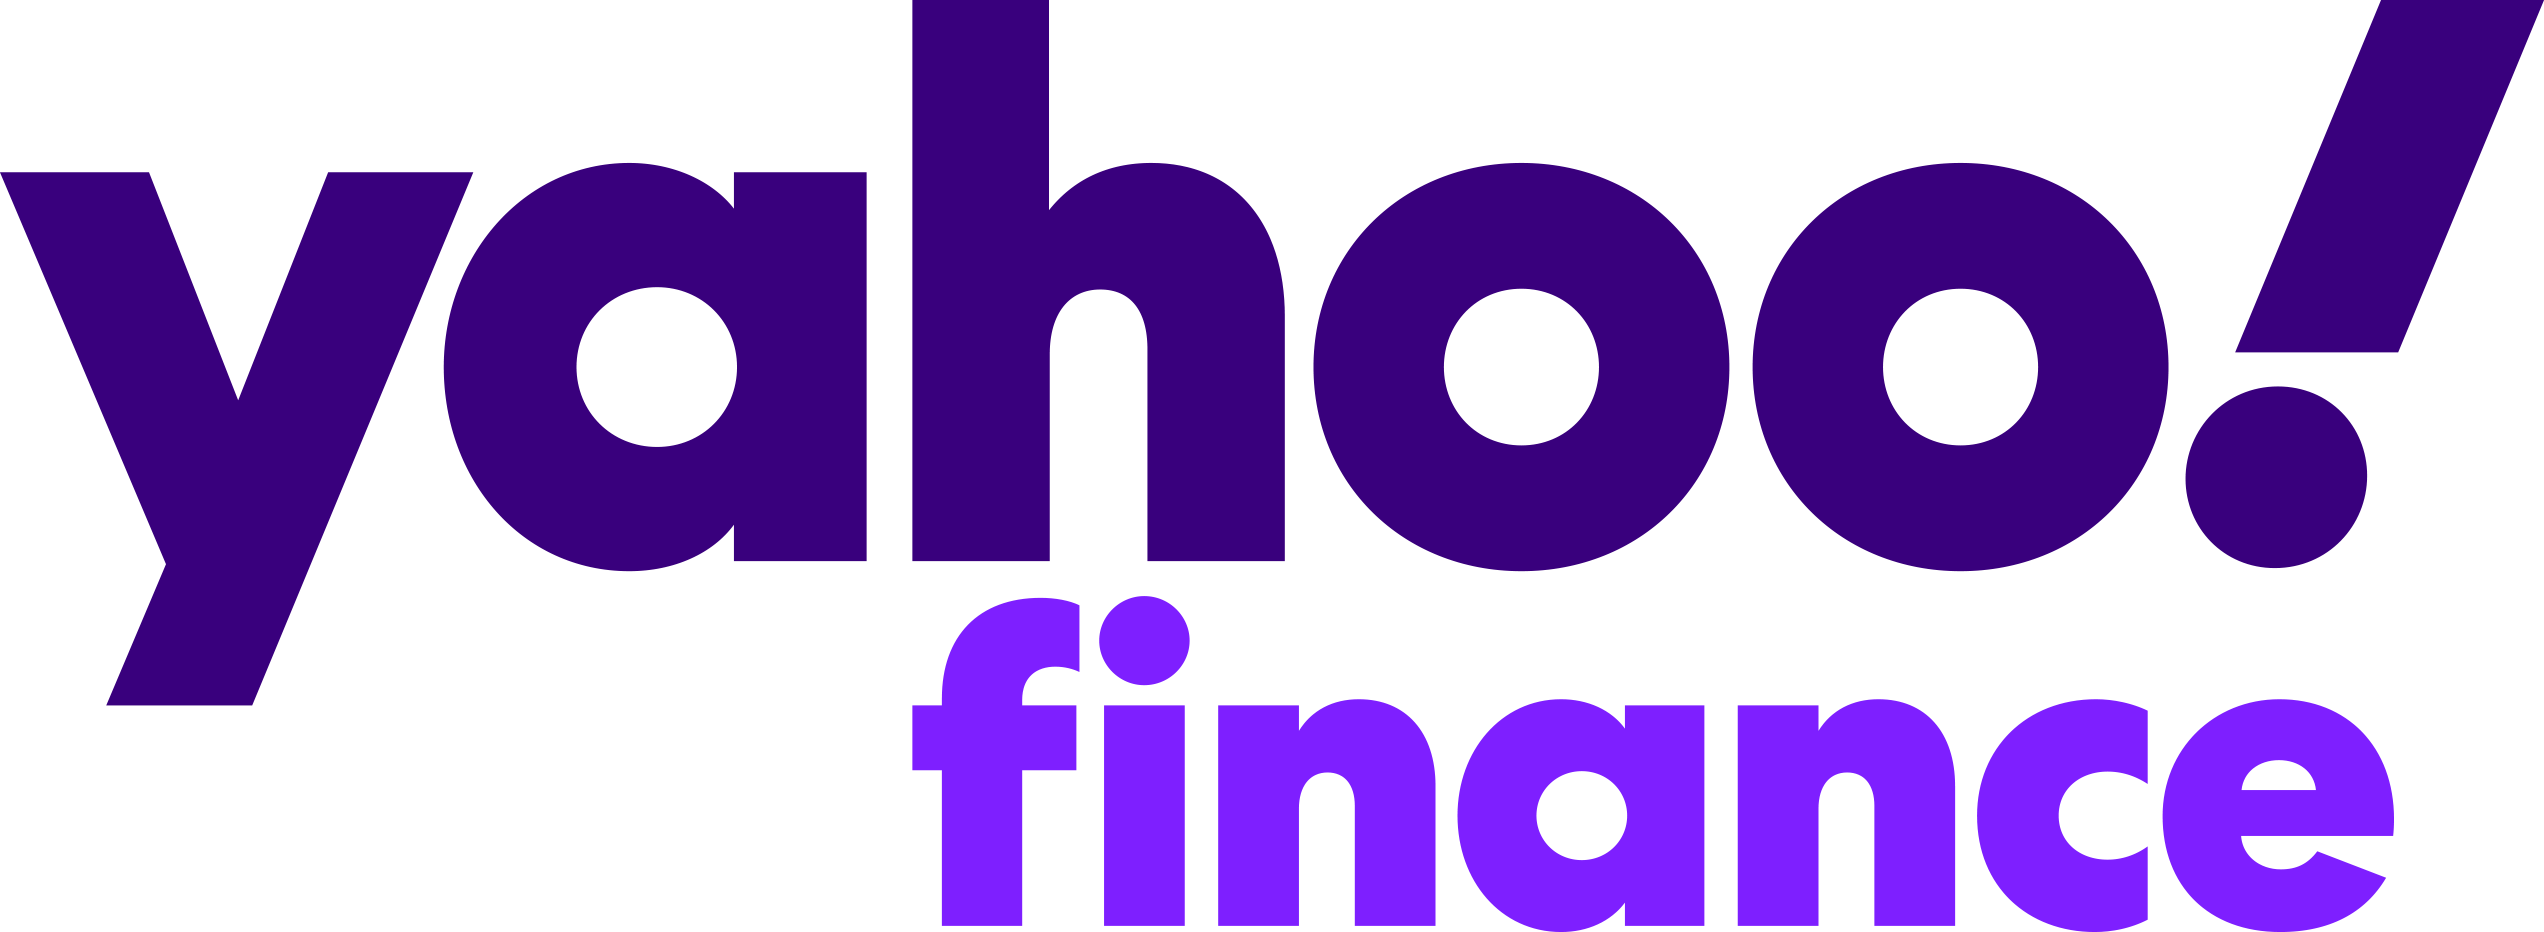 Yahoo Finance logó – Cereus pénzügyi tanácsadók